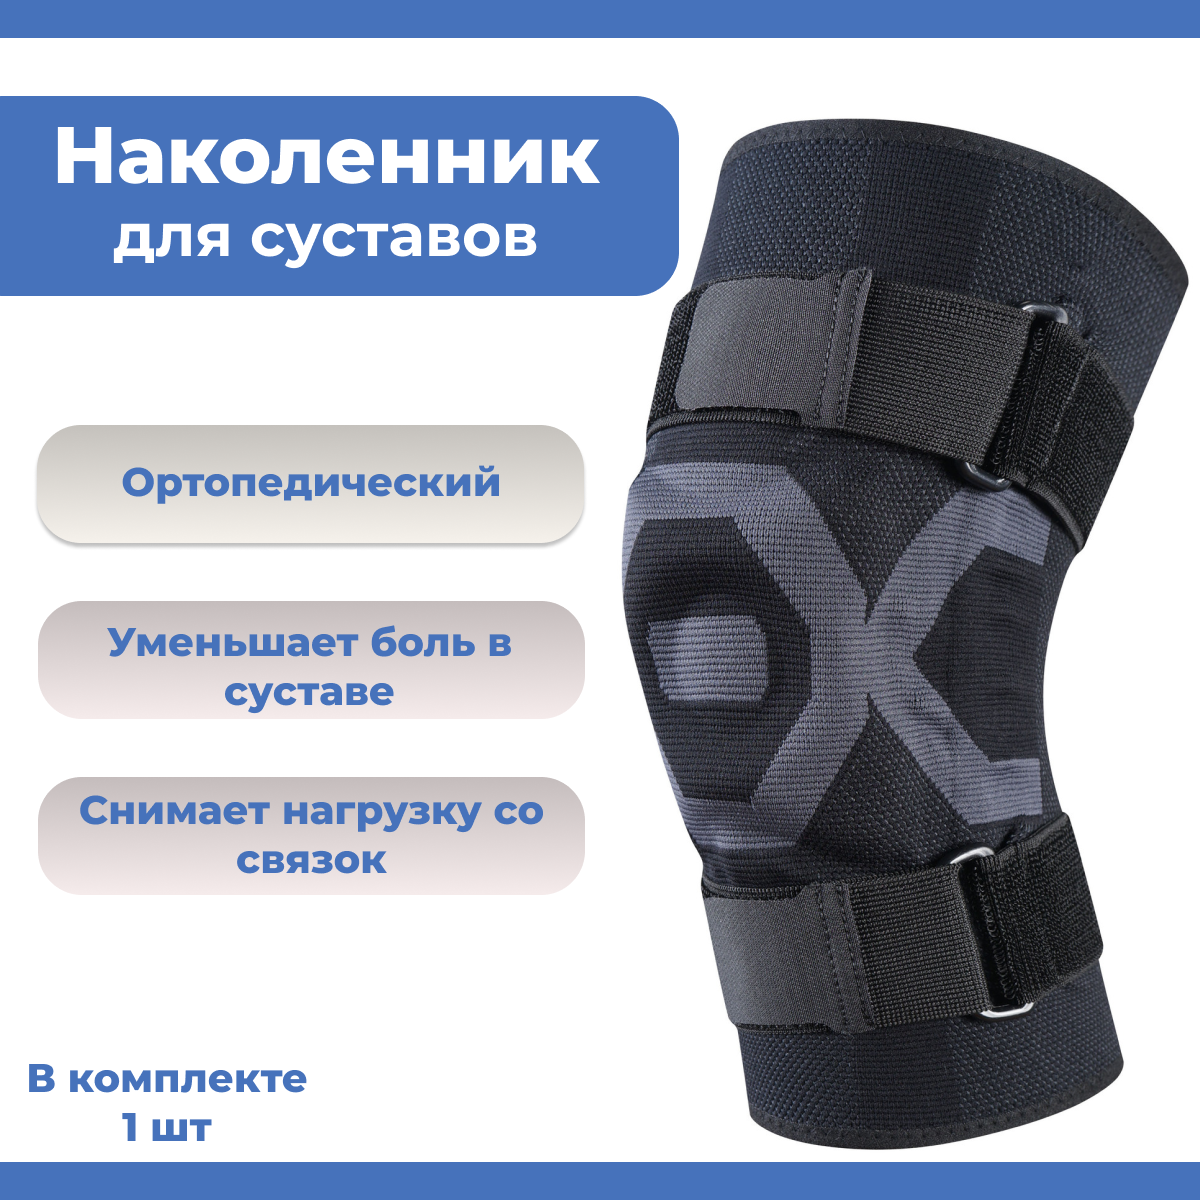 Наколенник для суставов размер XL бандаж на колено спортивный ортопедический для любых видов спорта Md